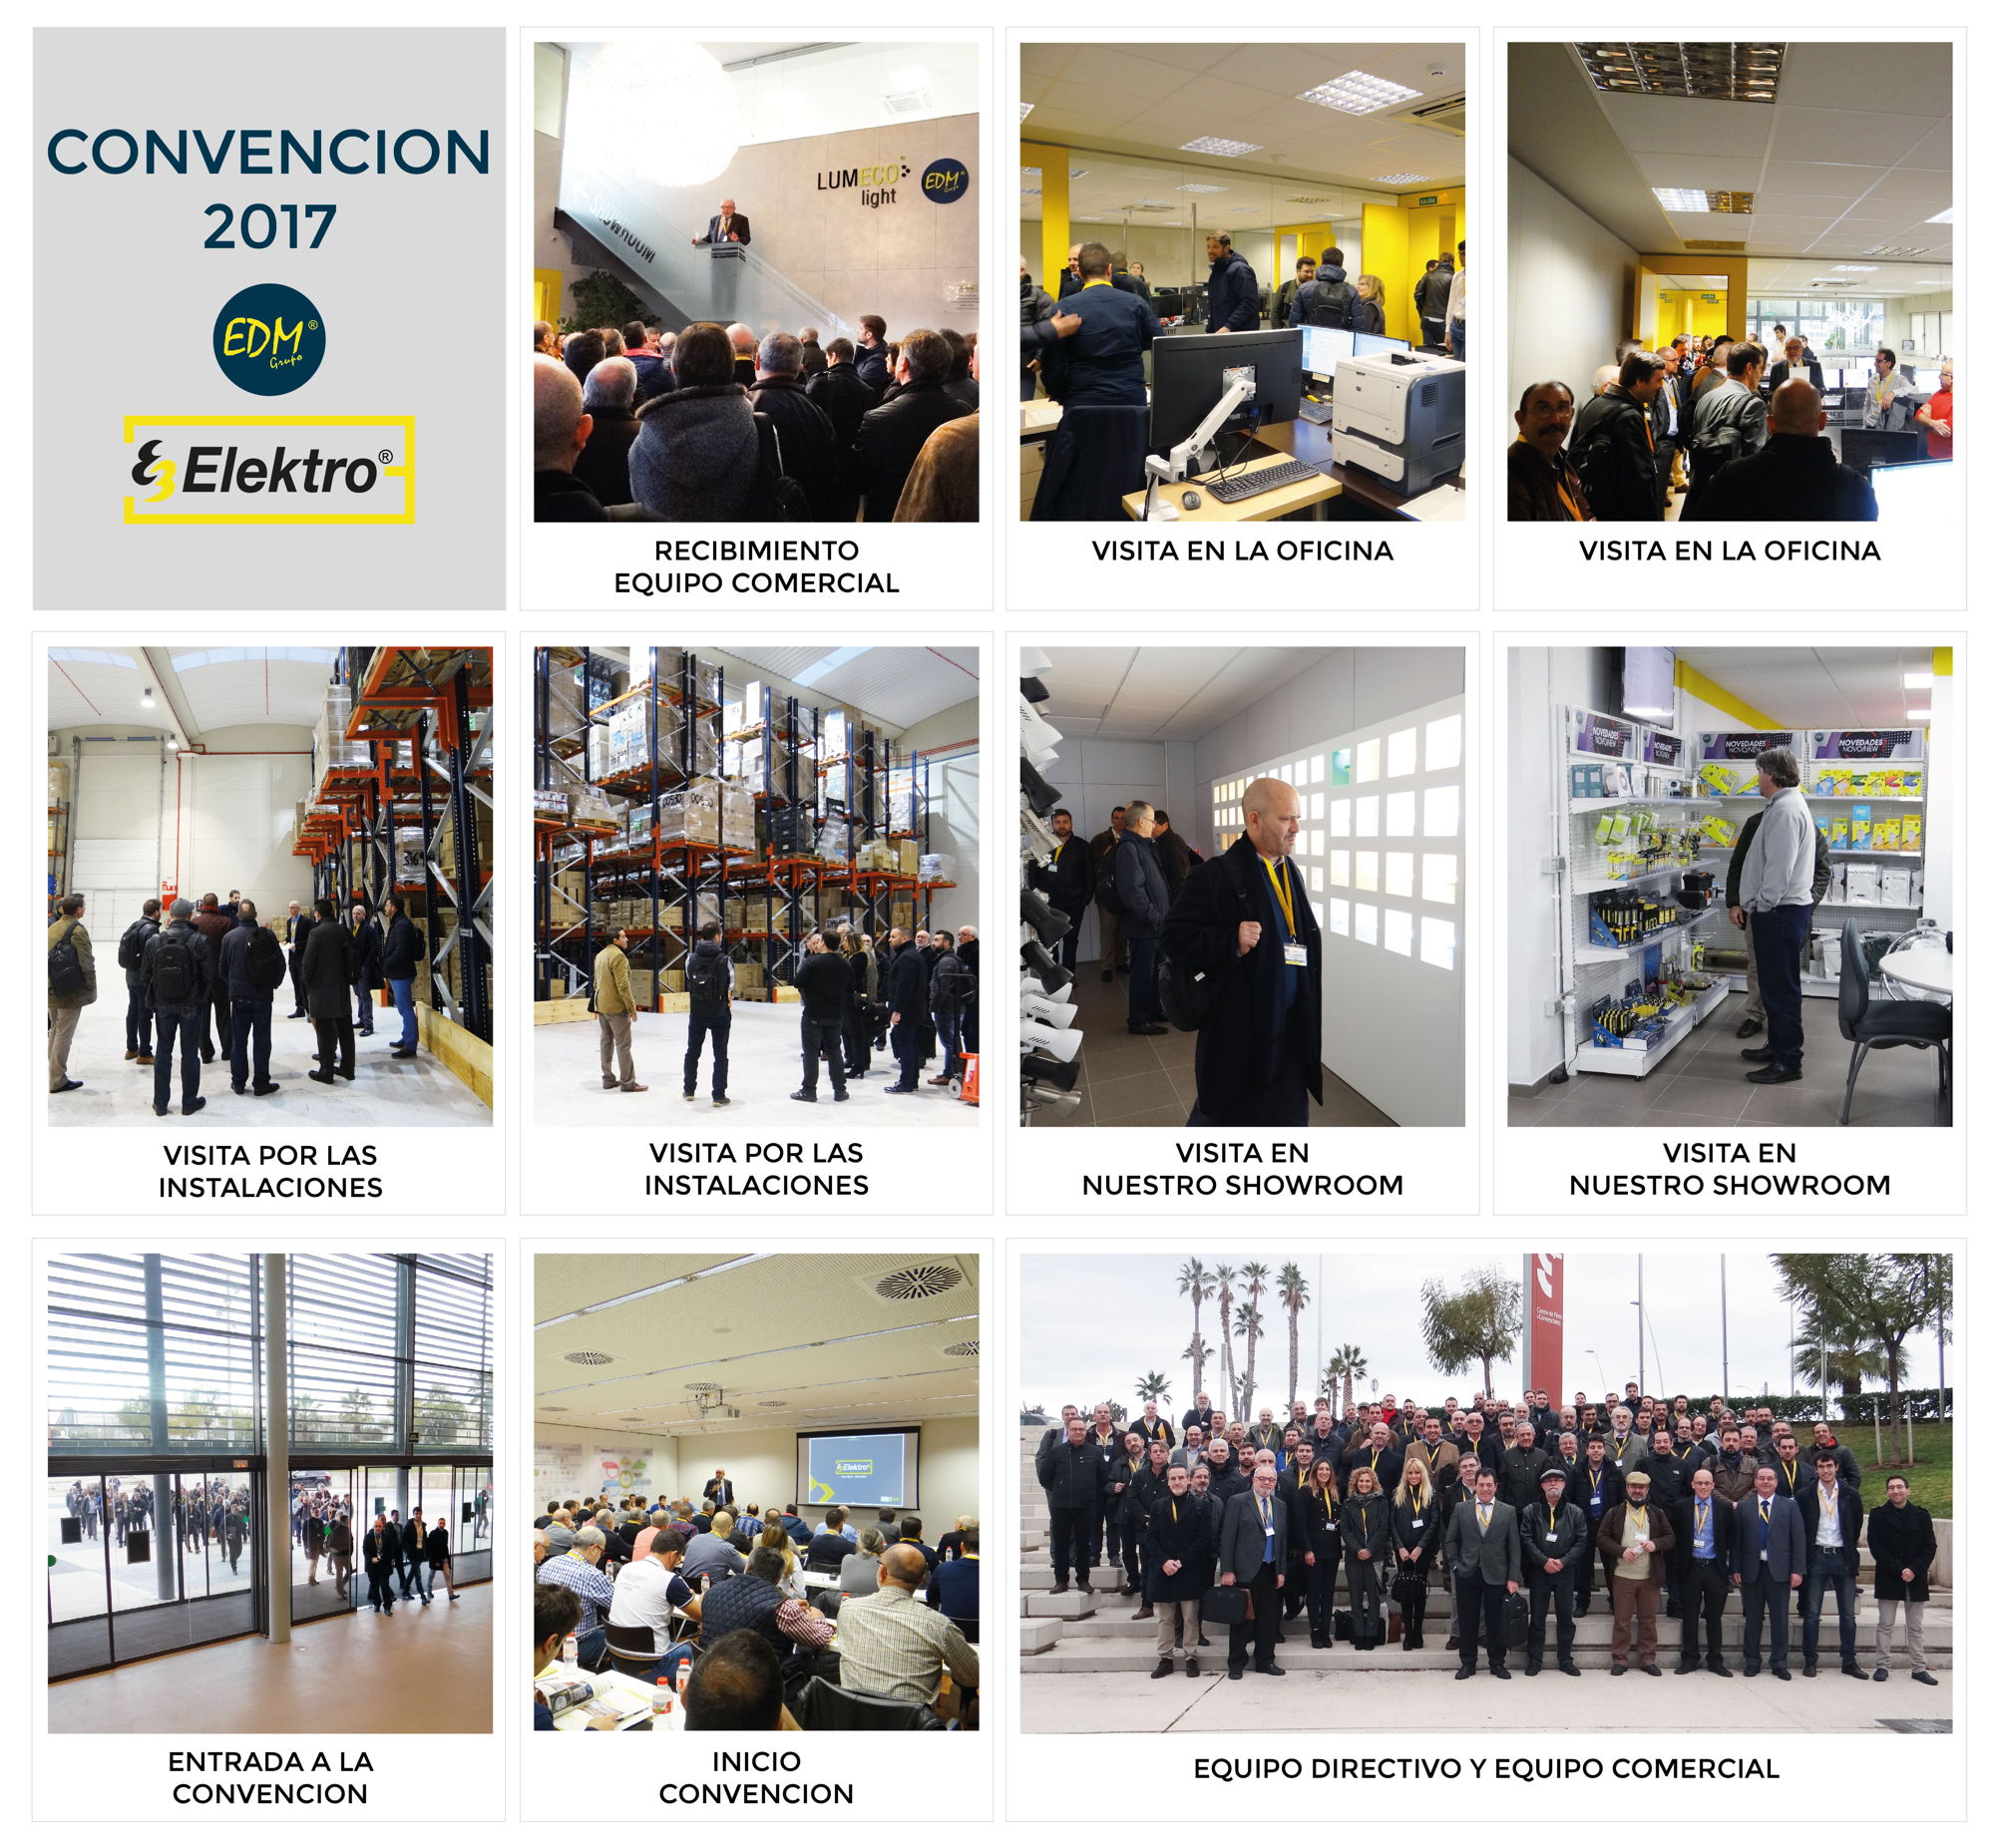 Convenção Elektro3 - Grupo EDM 2017